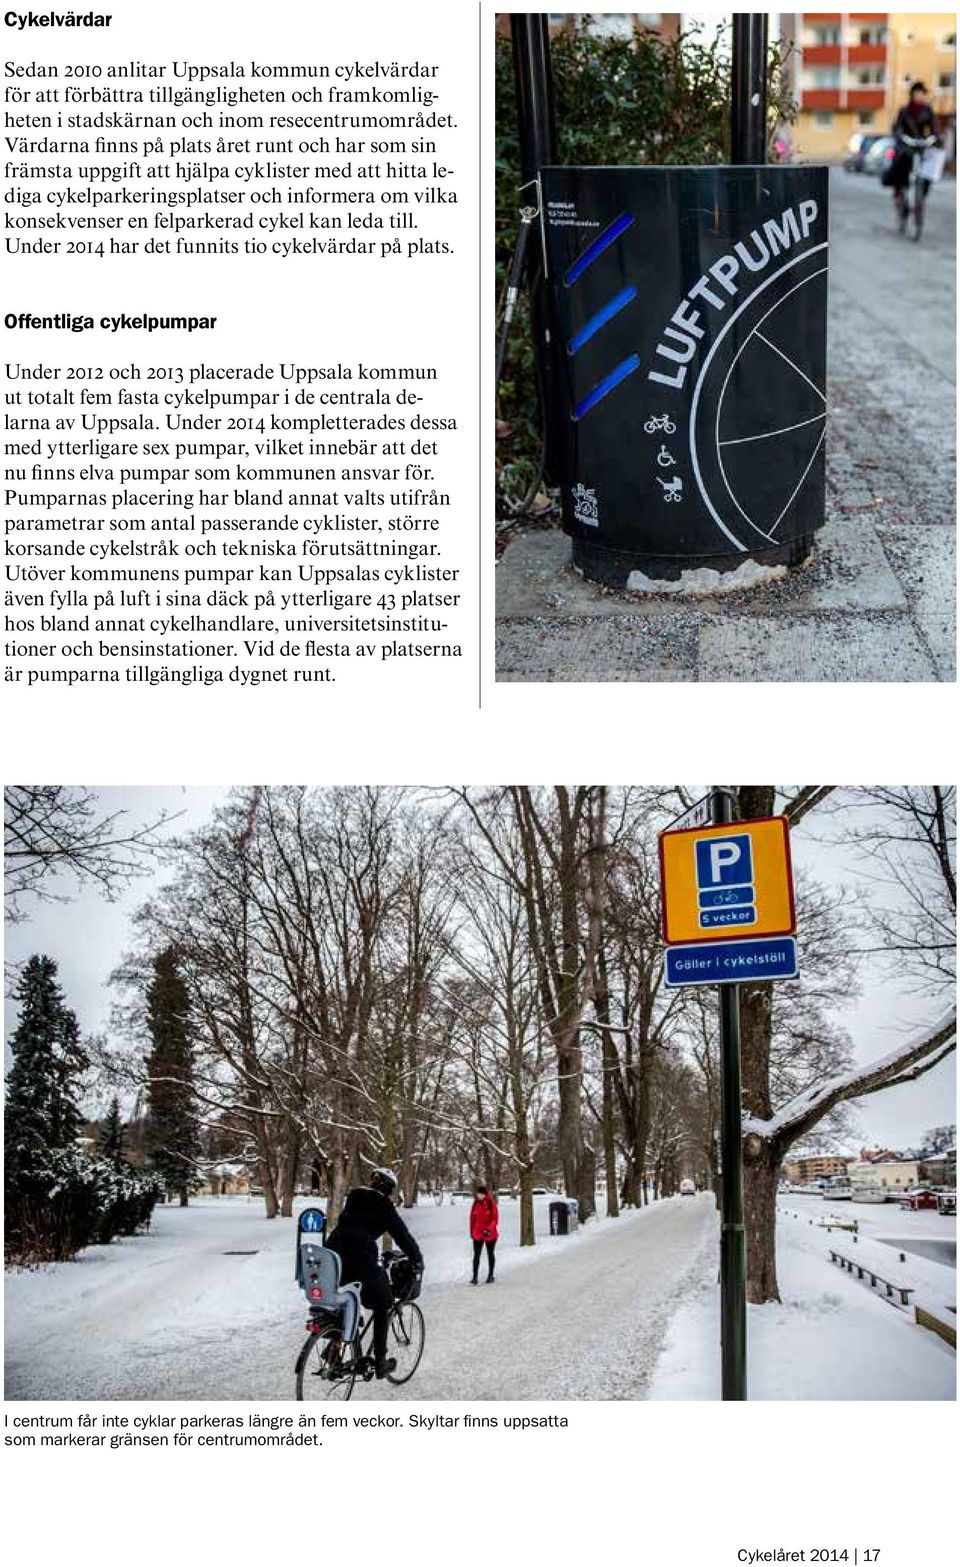 till. Under 2014 har det funnits tio cykelvärdar på plats. Offentliga cykelpumpar Under 2012 och 2013 placerade Uppsala kommun ut totalt fem fasta cykelpumpar i de centrala delarna av Uppsala.